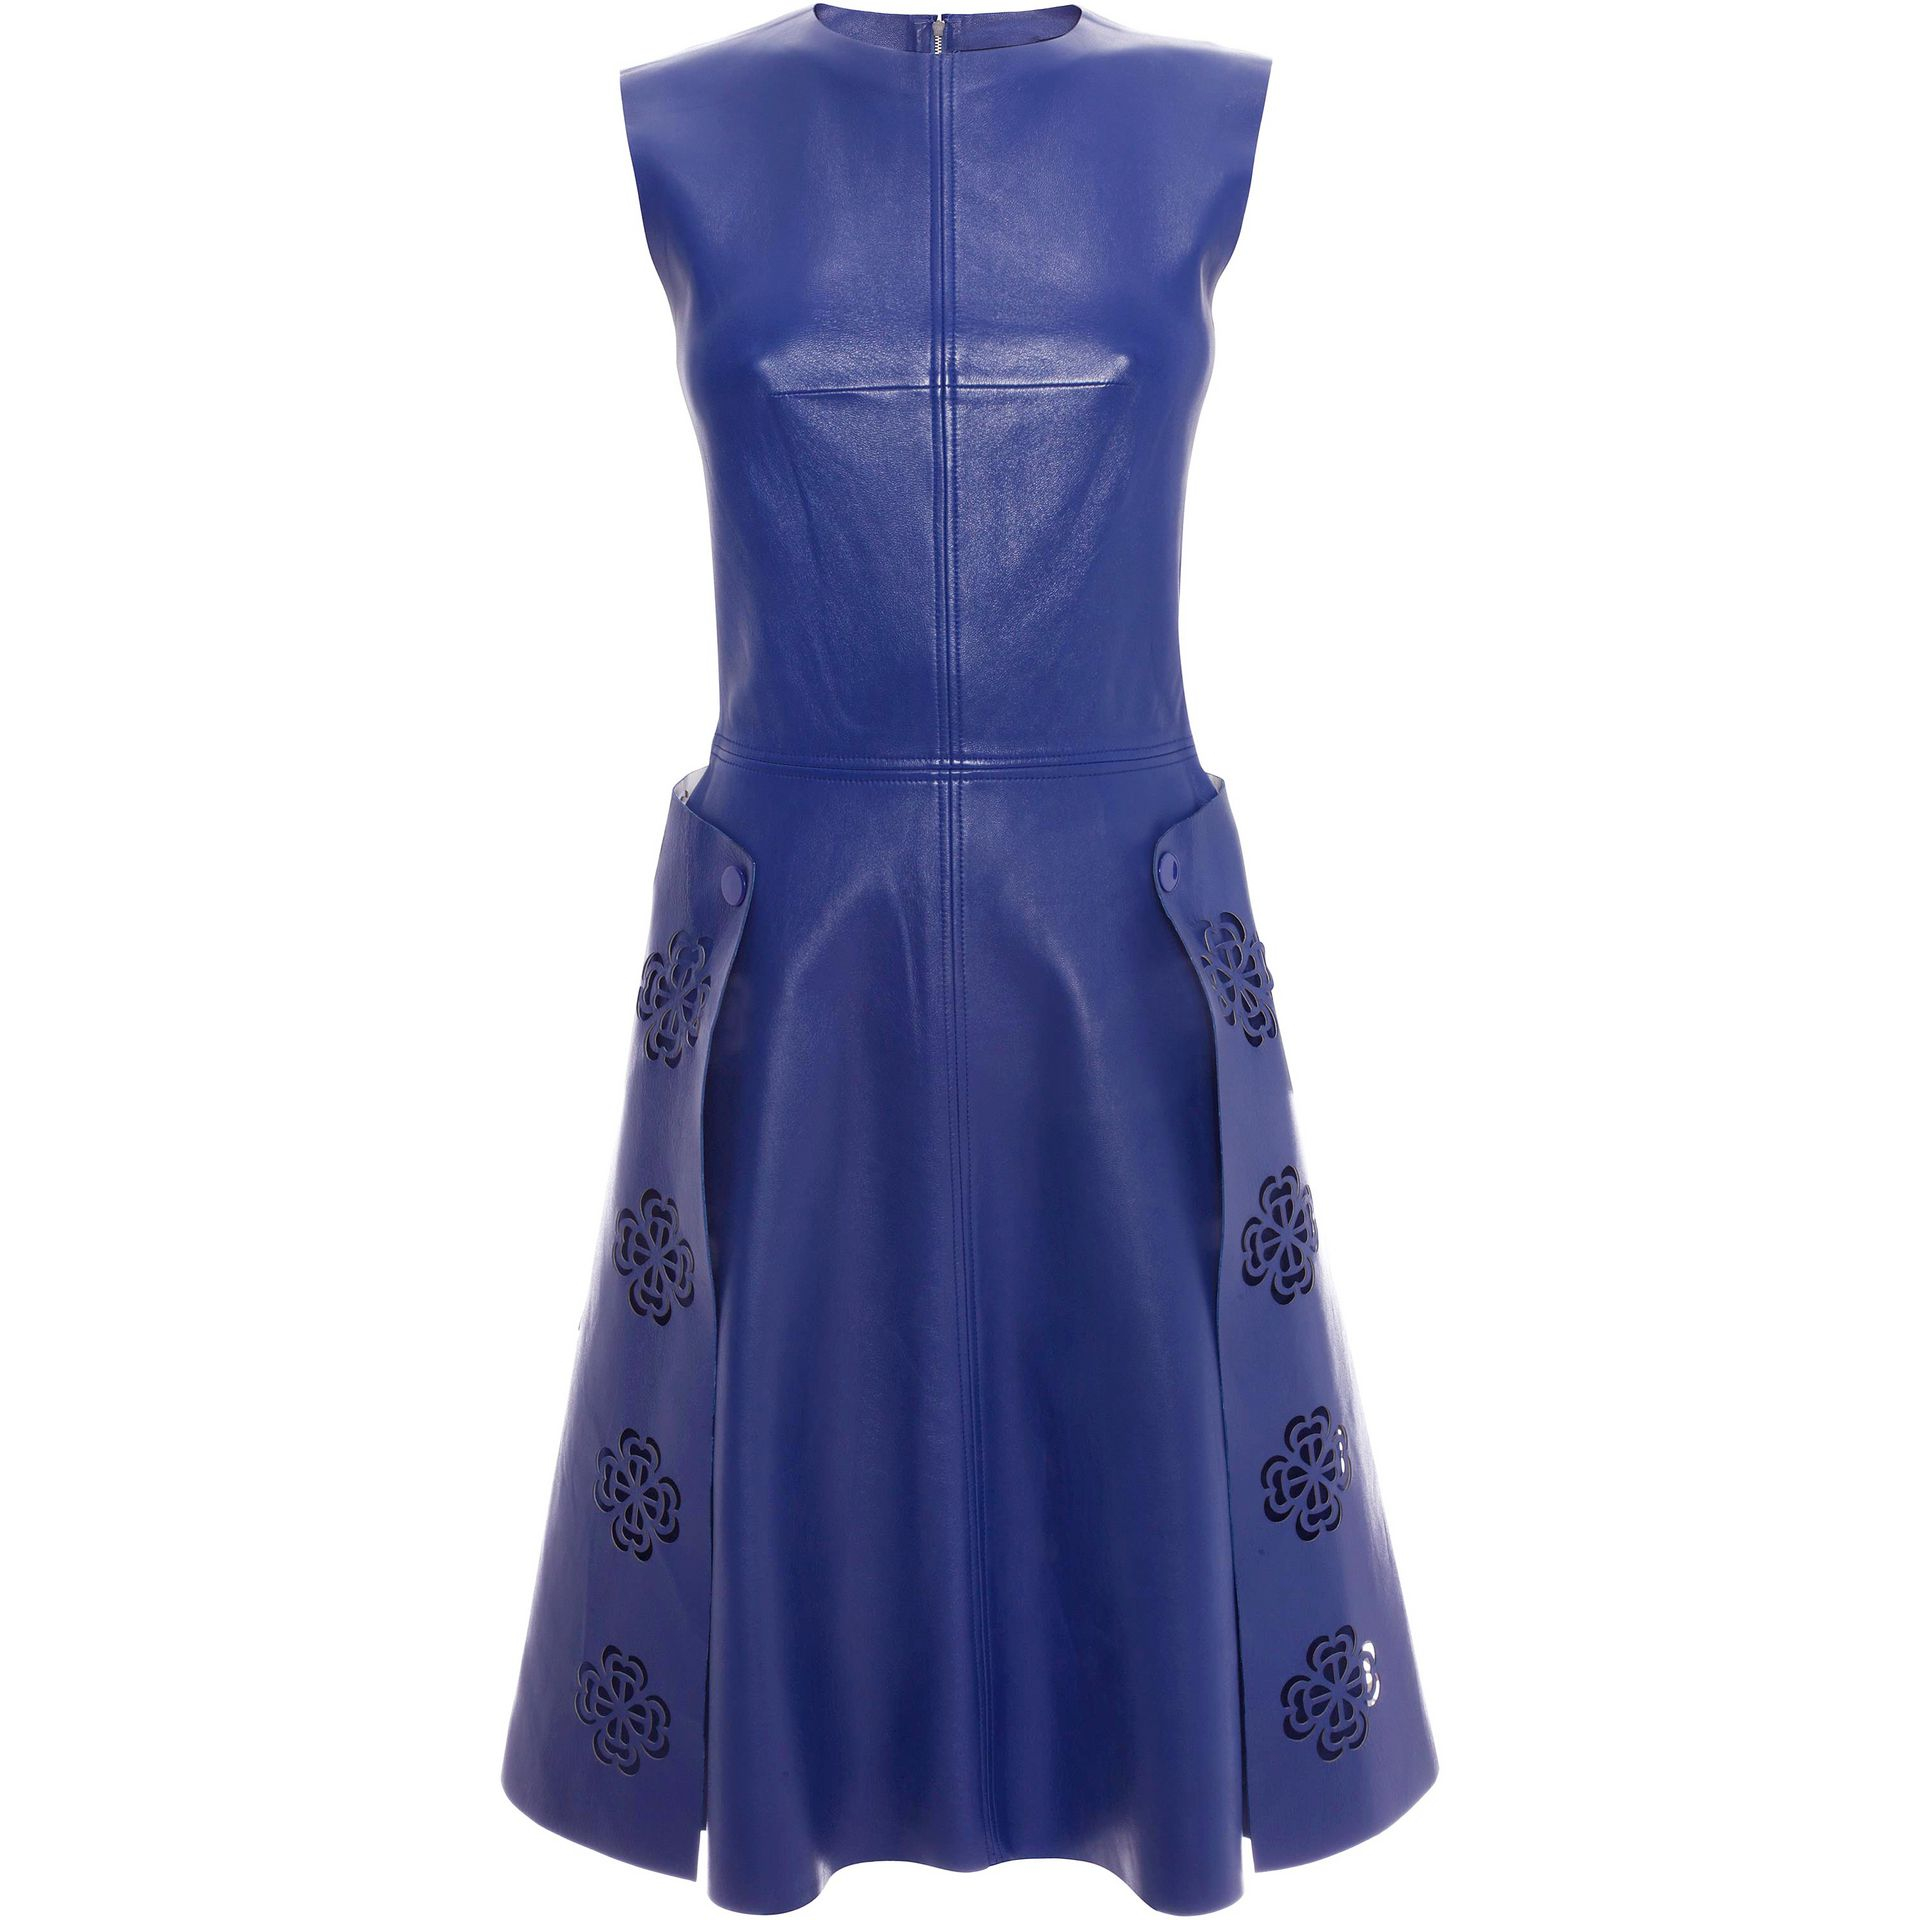 Lyst - Alexander Mcqueen Laser Cut Leather Dress in Blue